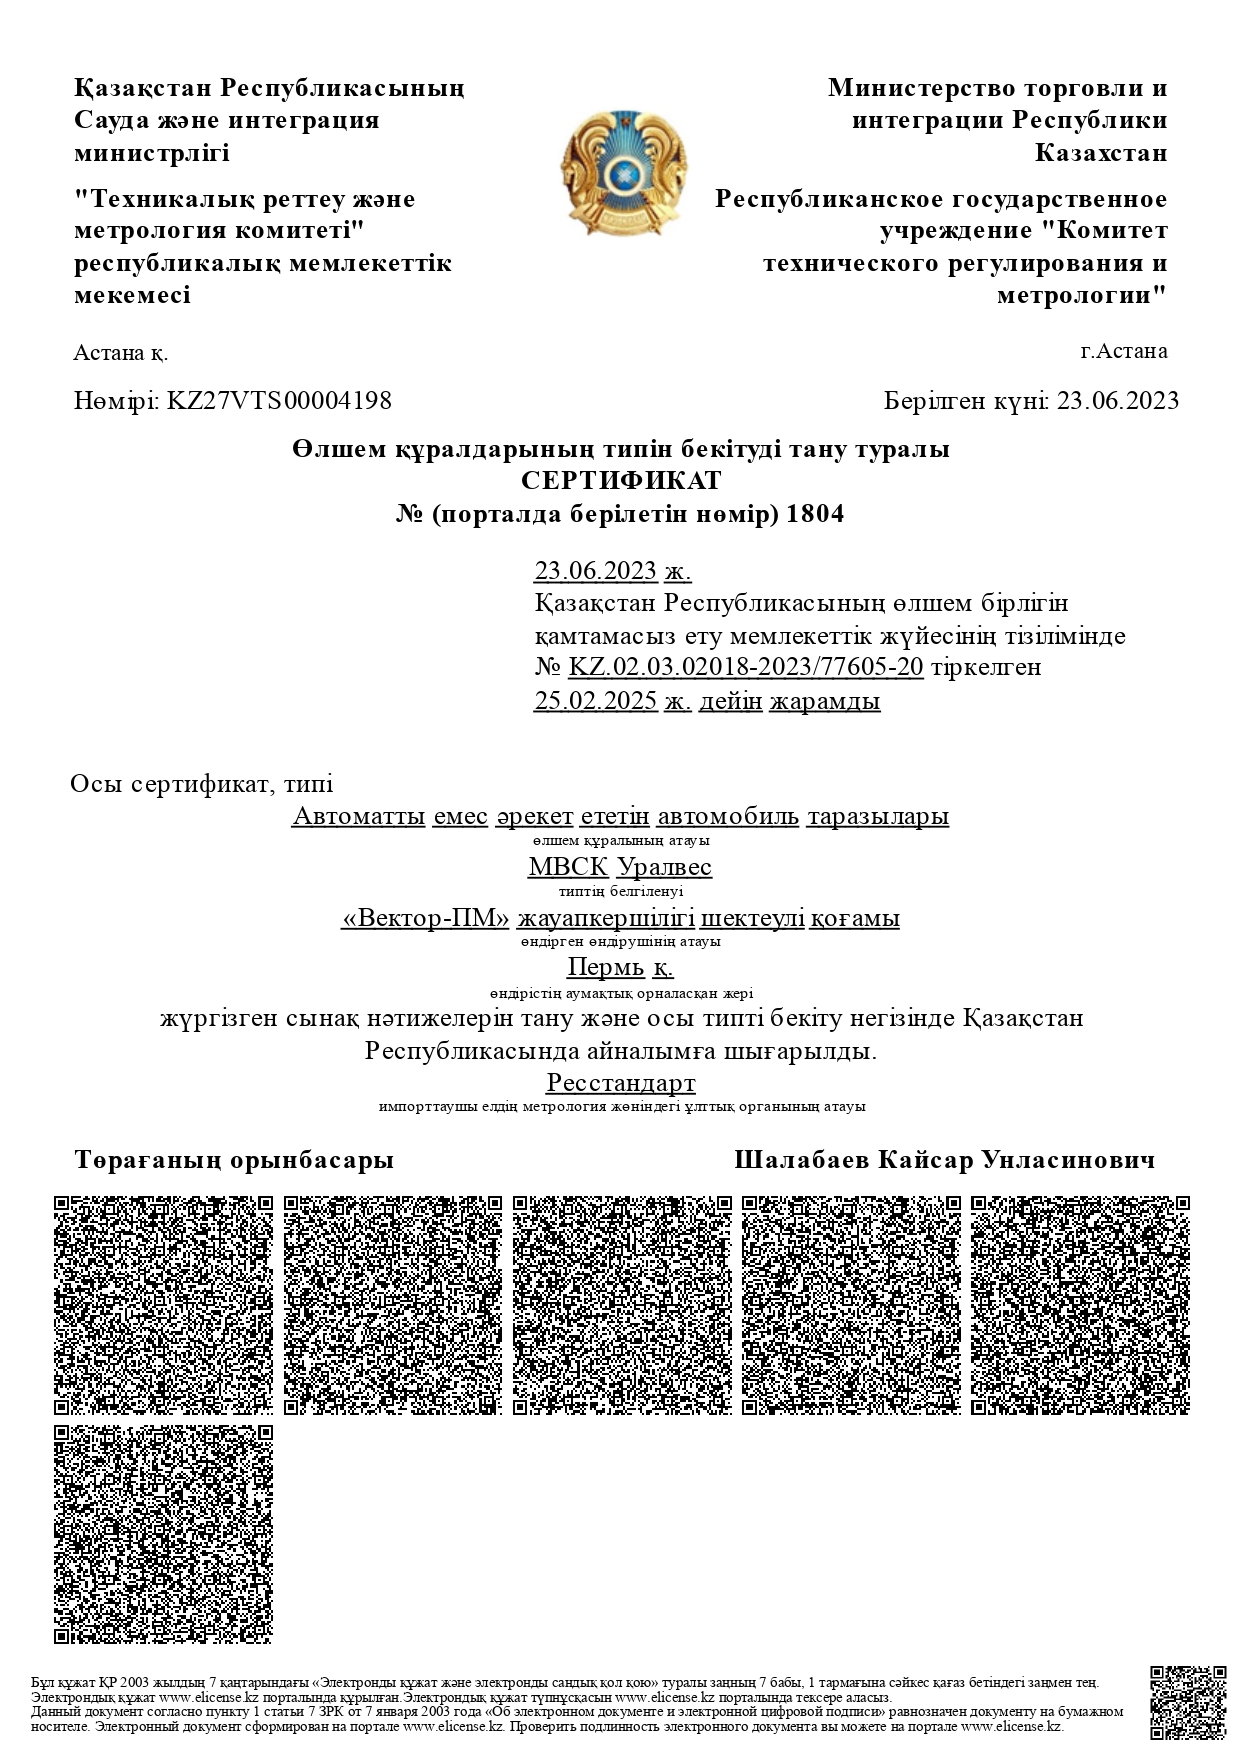 Сертификат в казахстан МВСК-УВ_ru (колейные и сборные на русском)